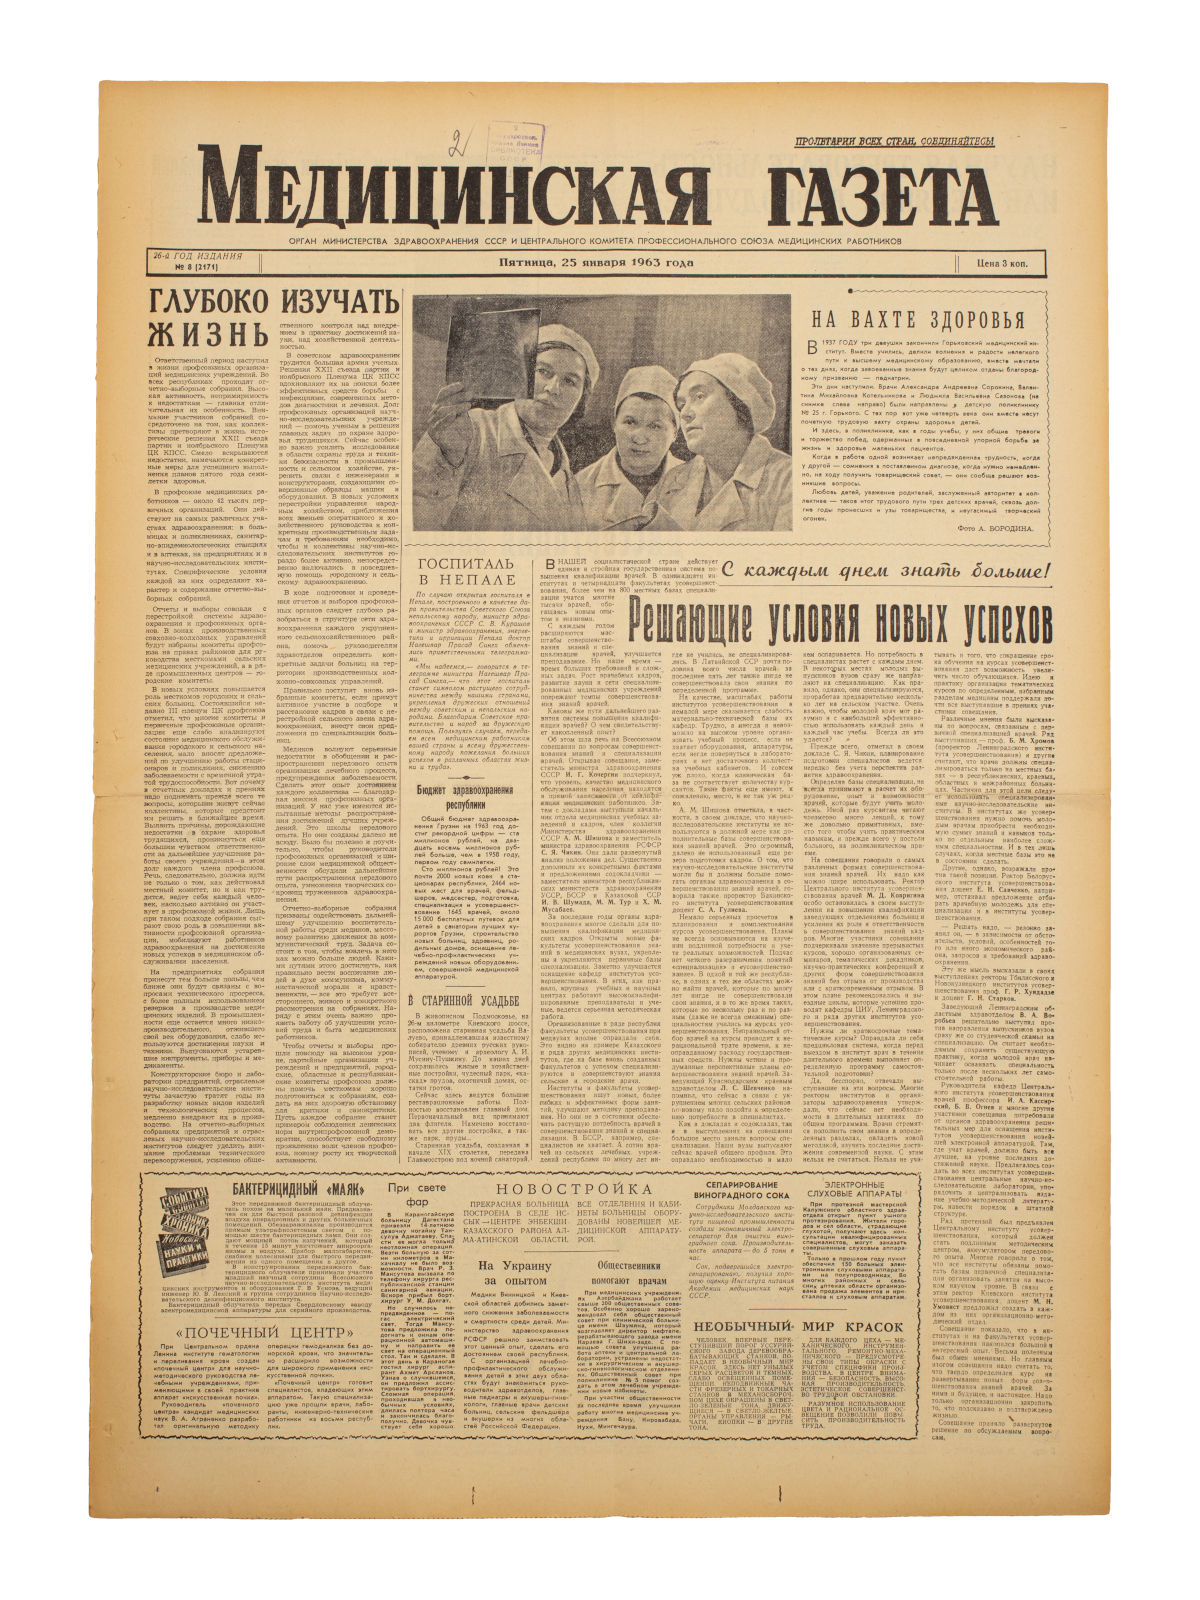 Старая советская газета для врача - фото